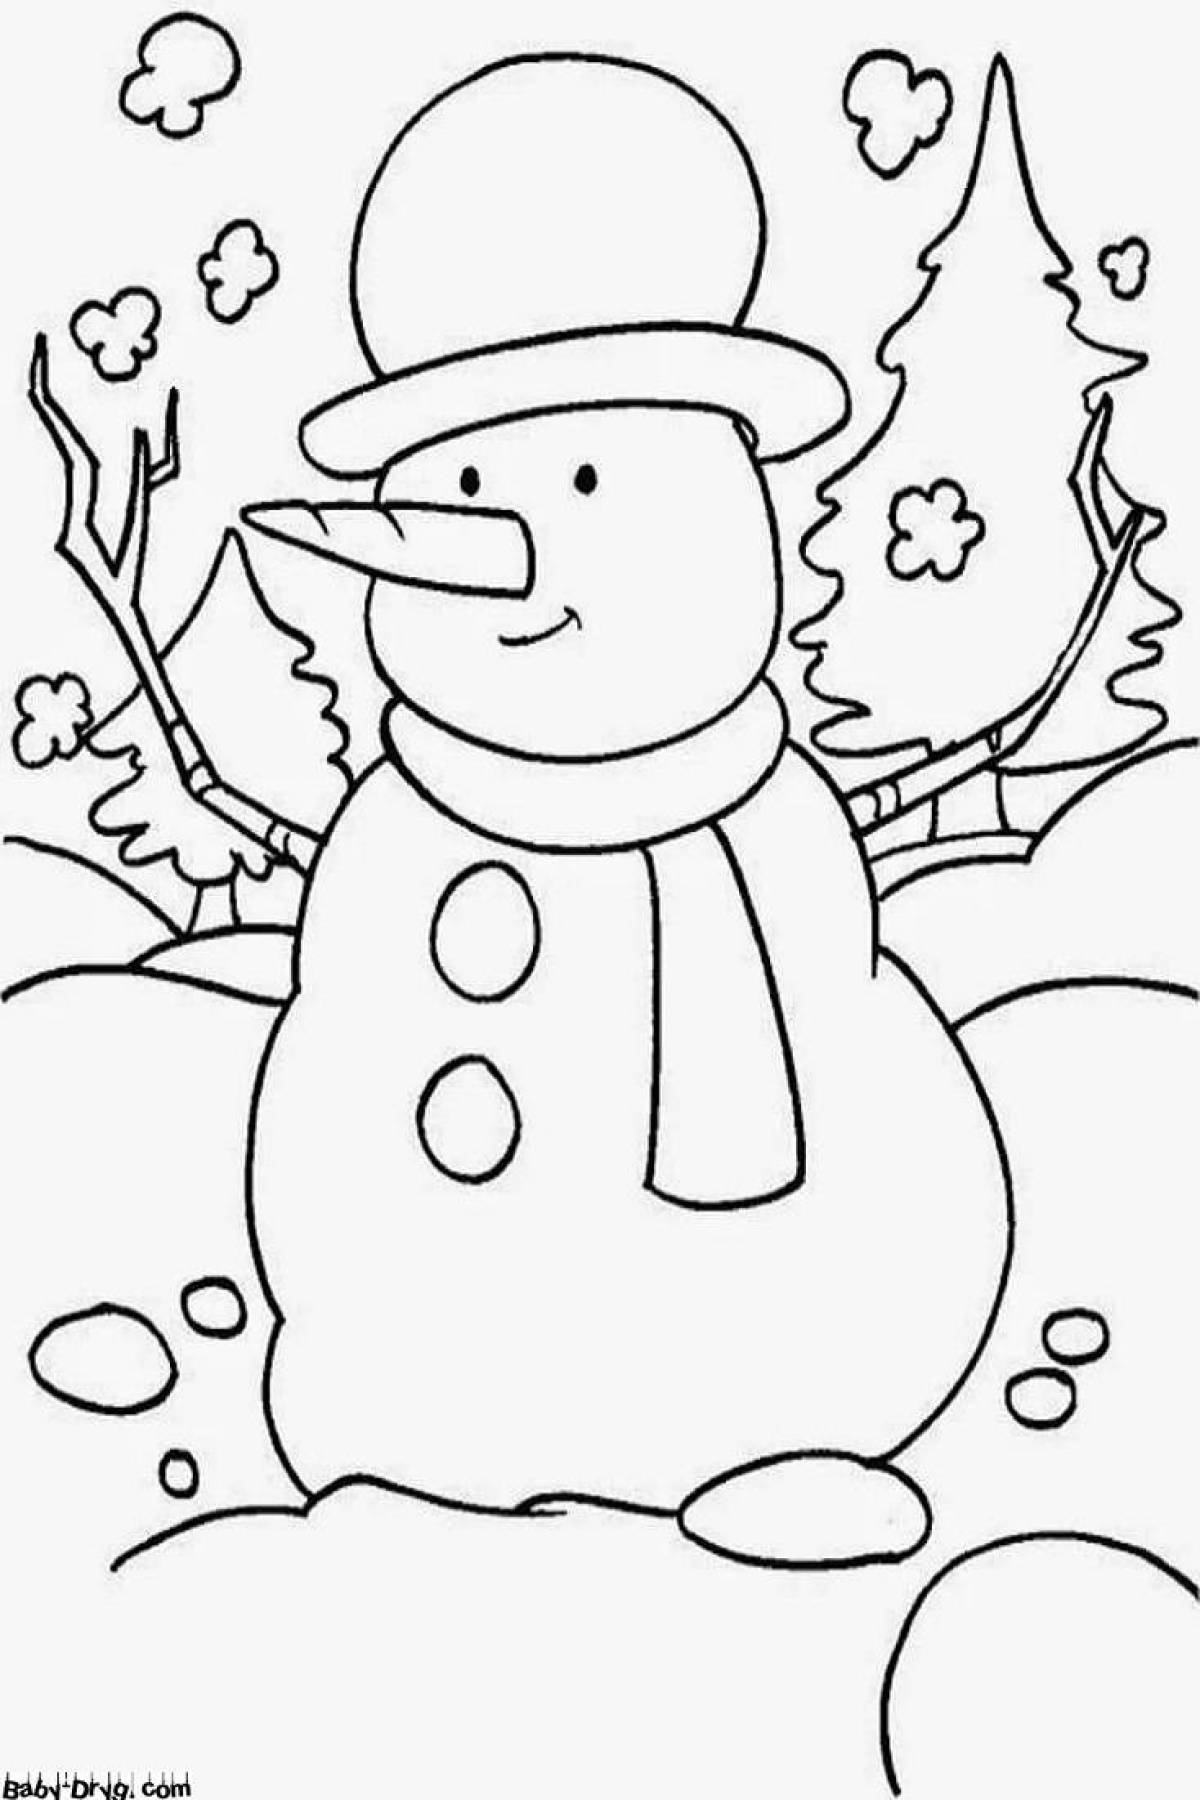 Glitzy coloring page snowman picture